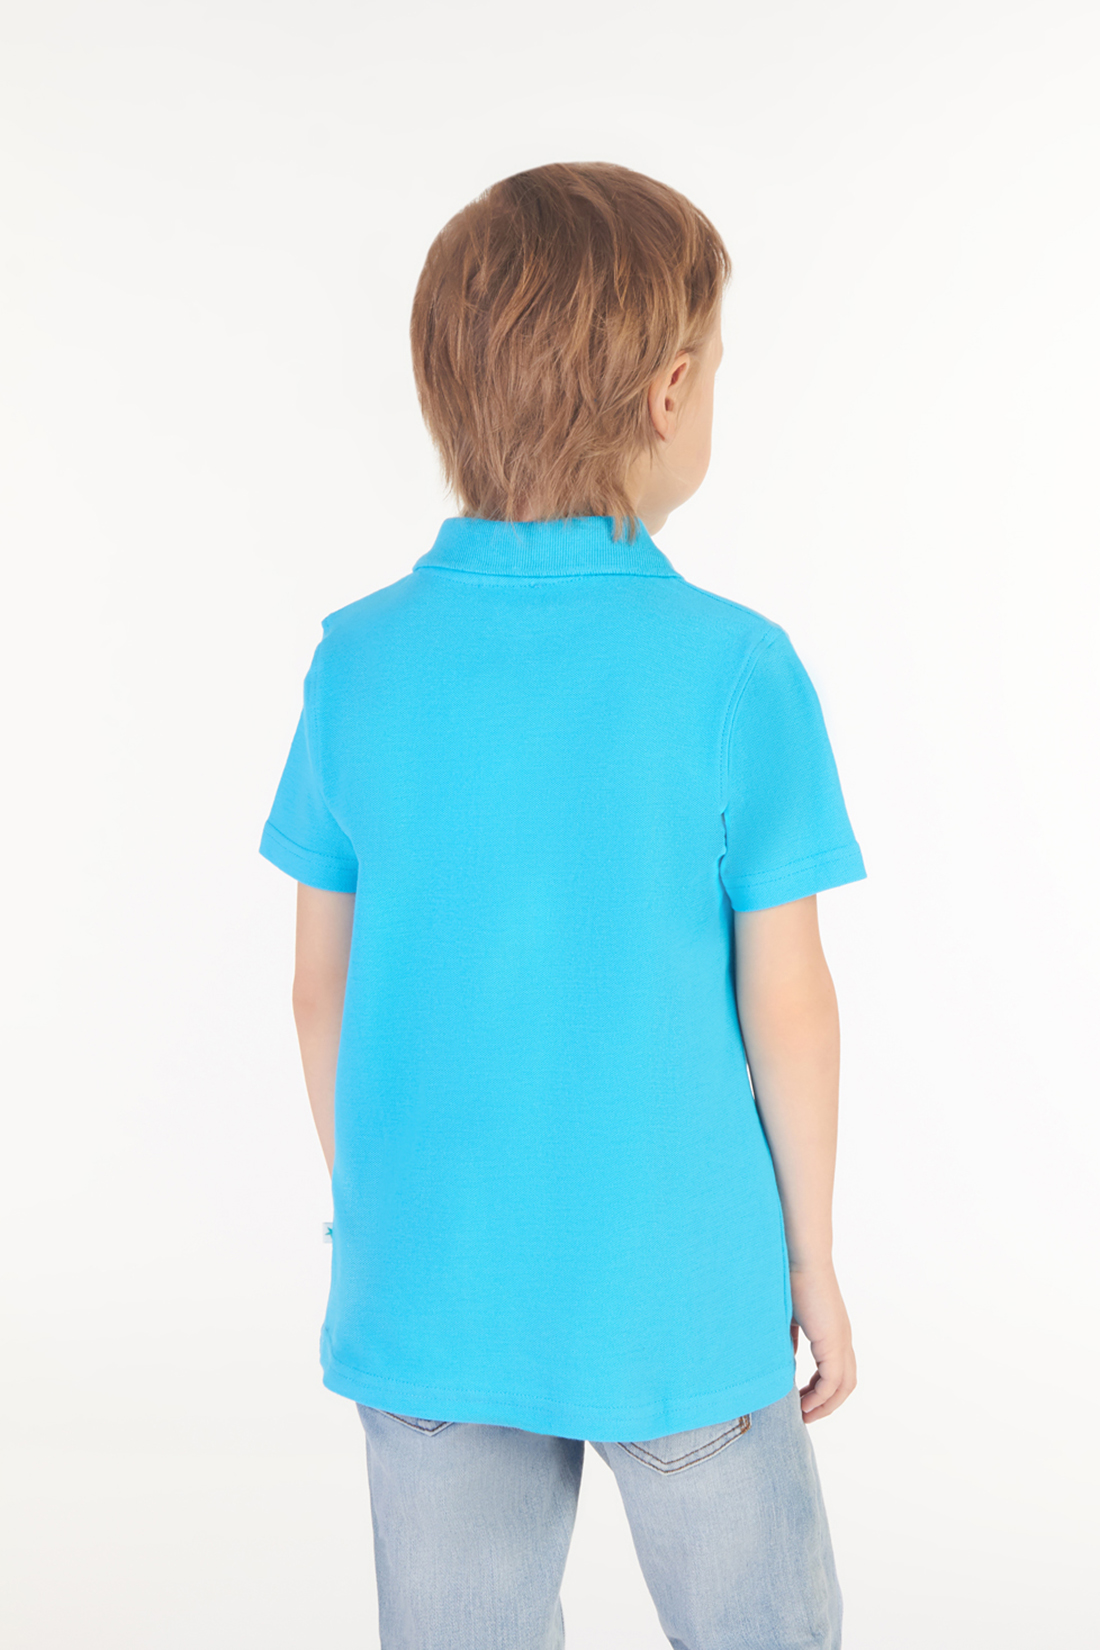 Поло для мальчика (арт. baon BK708003), размер 98-104, цвет голубой Поло для мальчика (арт. baon BK708003) - фото 2